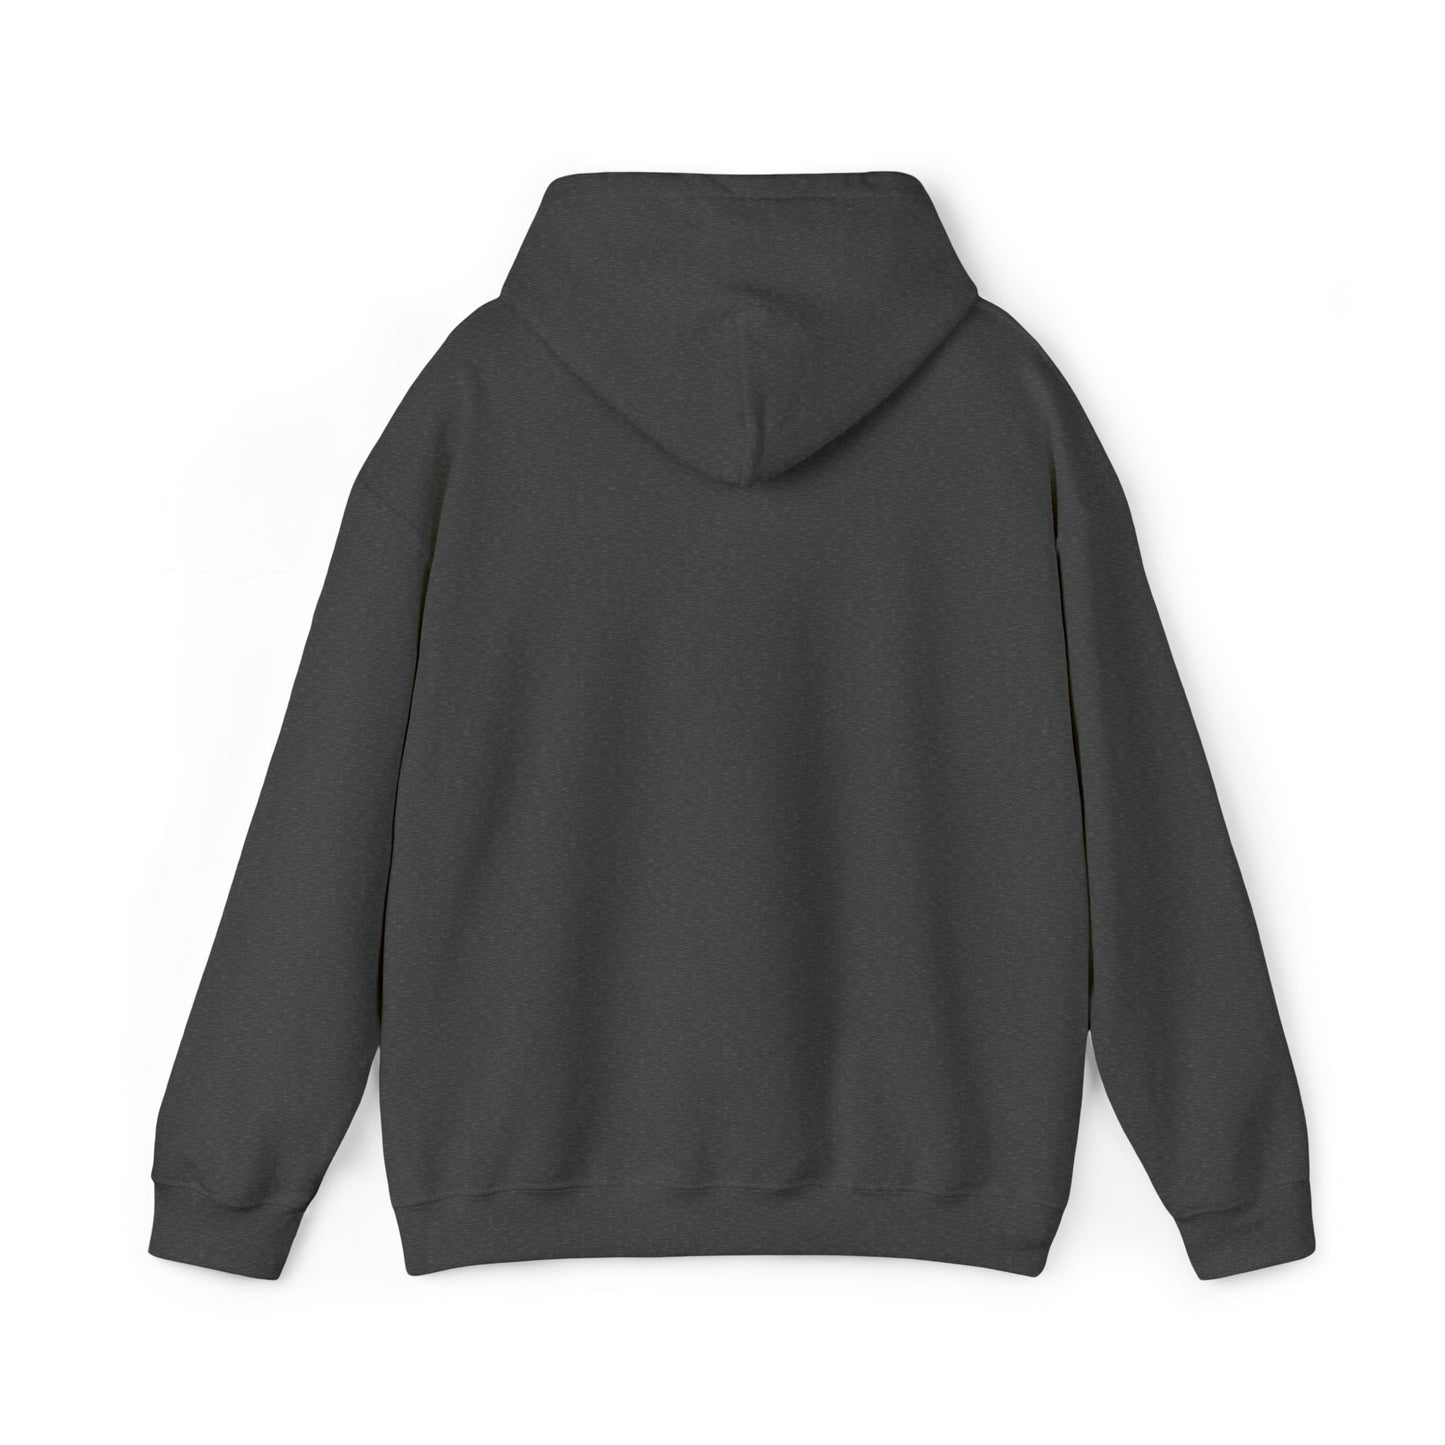 Dark Side Coffee | Unisex Heavy Blend™ Hooded Sweatshirt Hoodie - The Meeting Place on Market